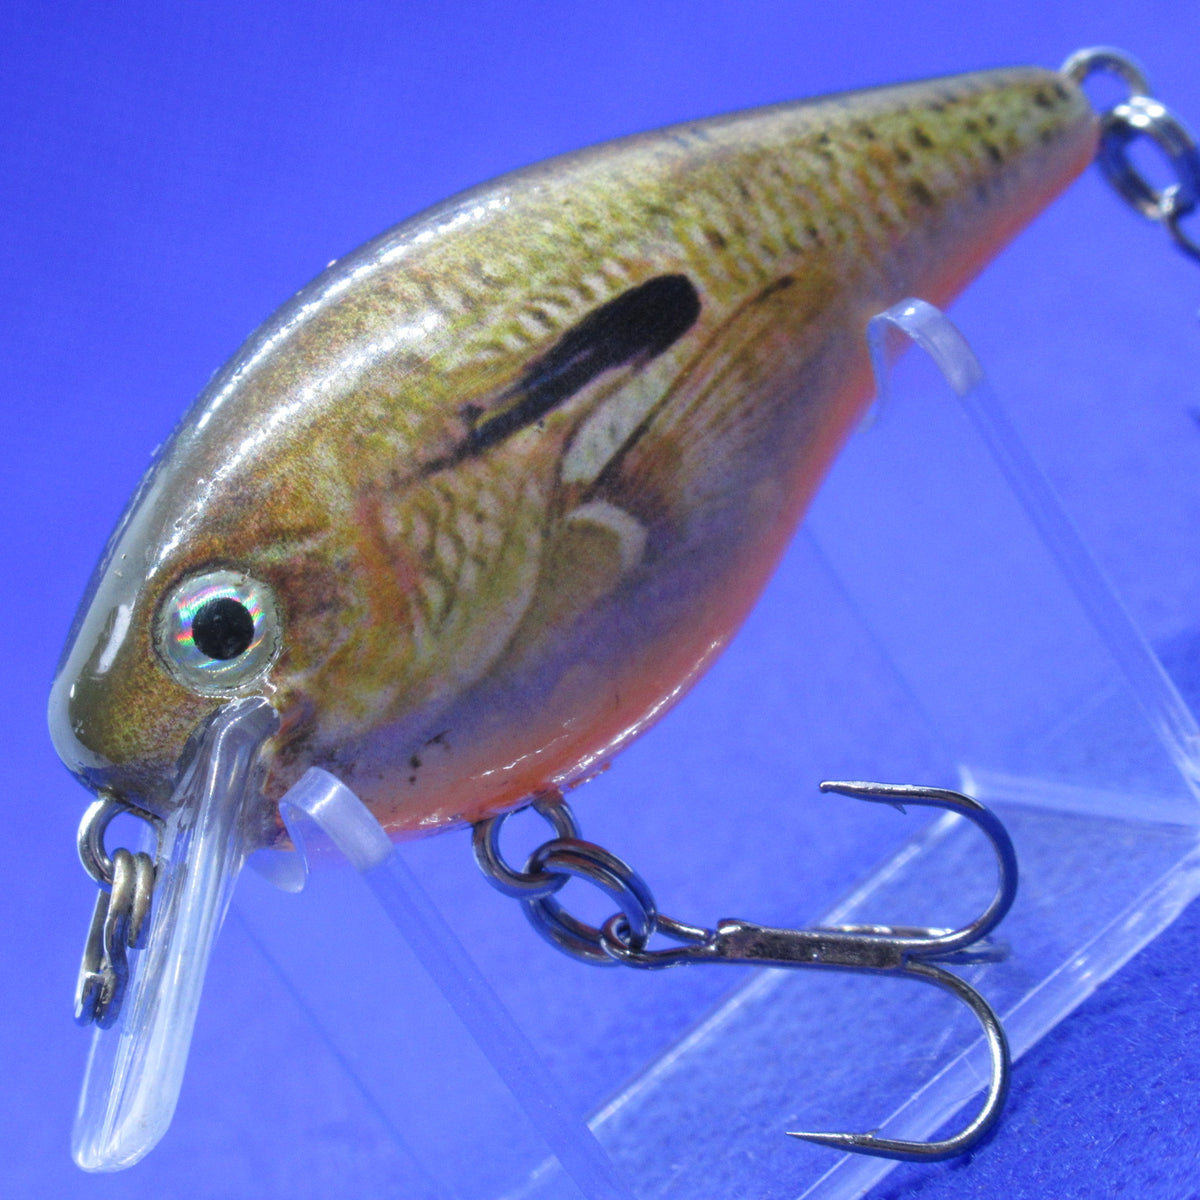 KVD 1.0 Squarebill Crankbait [Used] – JAPAN FISHING TACKLE